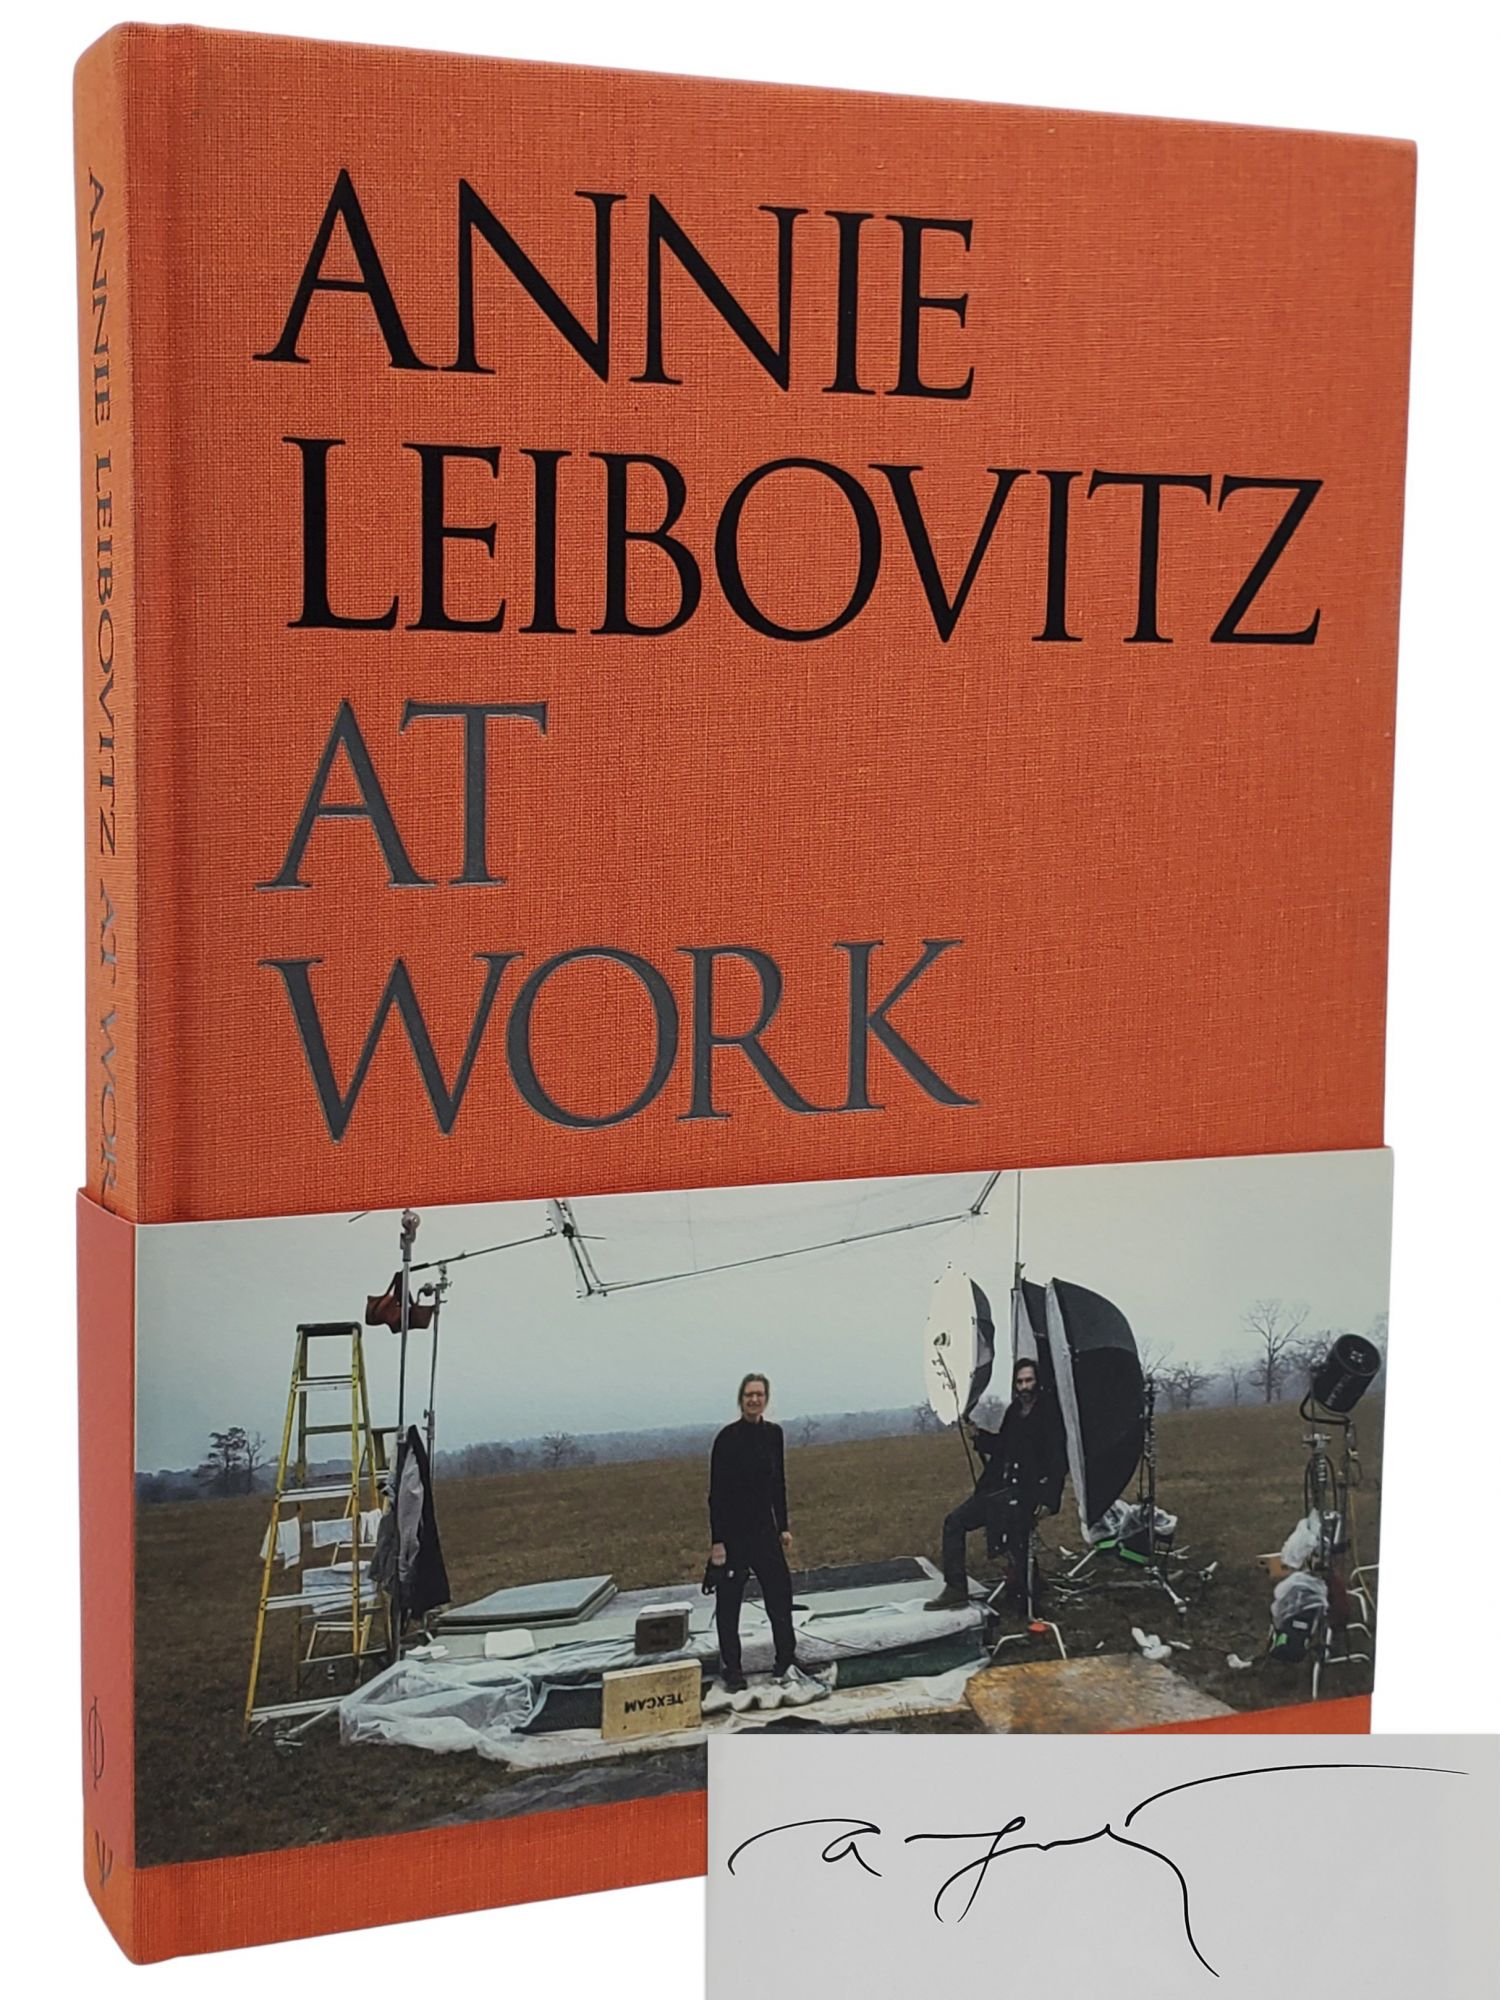 [Book #50572] ANNIE LEIBOVITZ AT WORK. Annie Leibovitz.